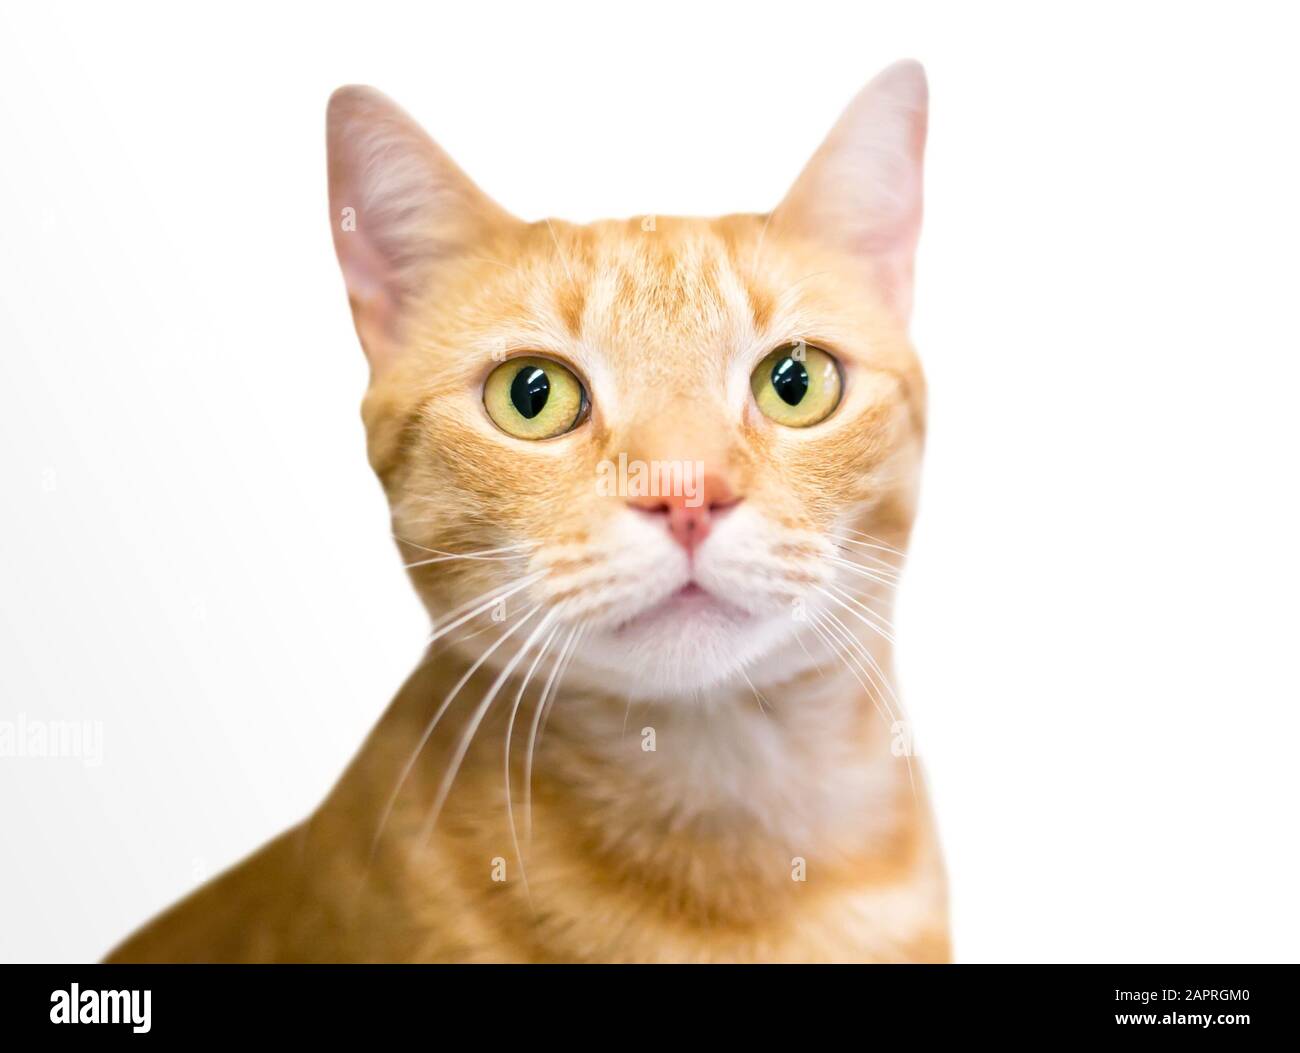 Un chat de shorthair domestique tabby orange regardant latéralement avec une expression appréhensive Banque D'Images